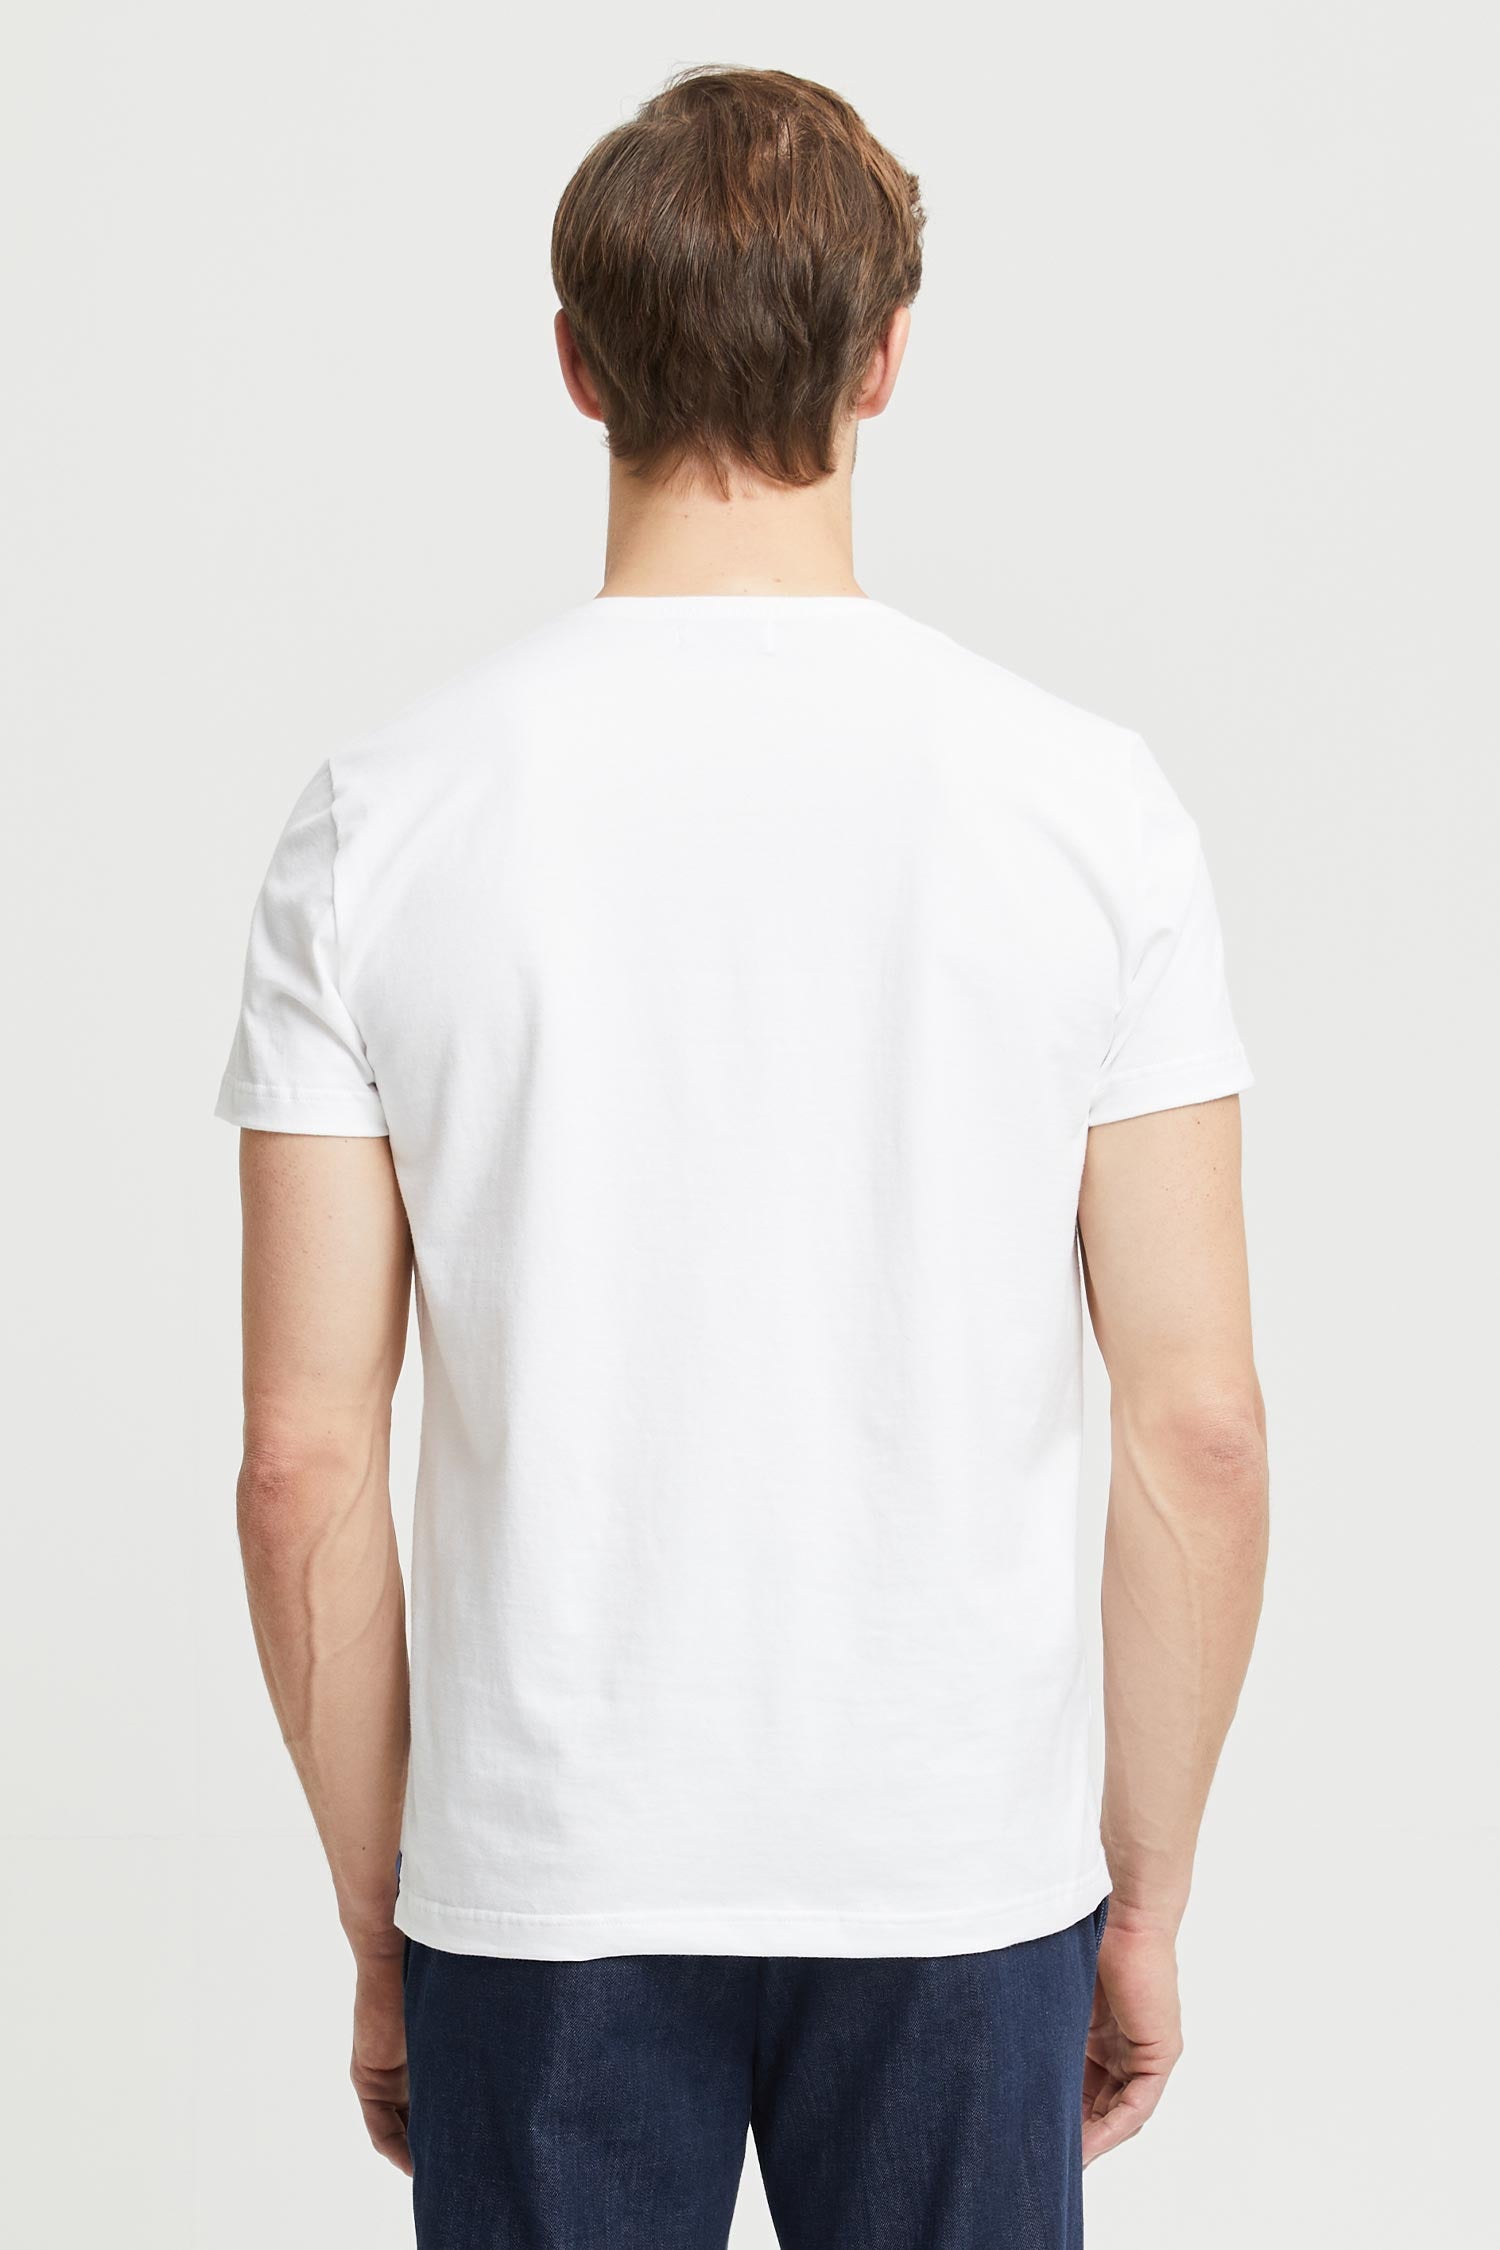 Frenn Henri sustainable premium quality GOTS organic cotton t-shirt white